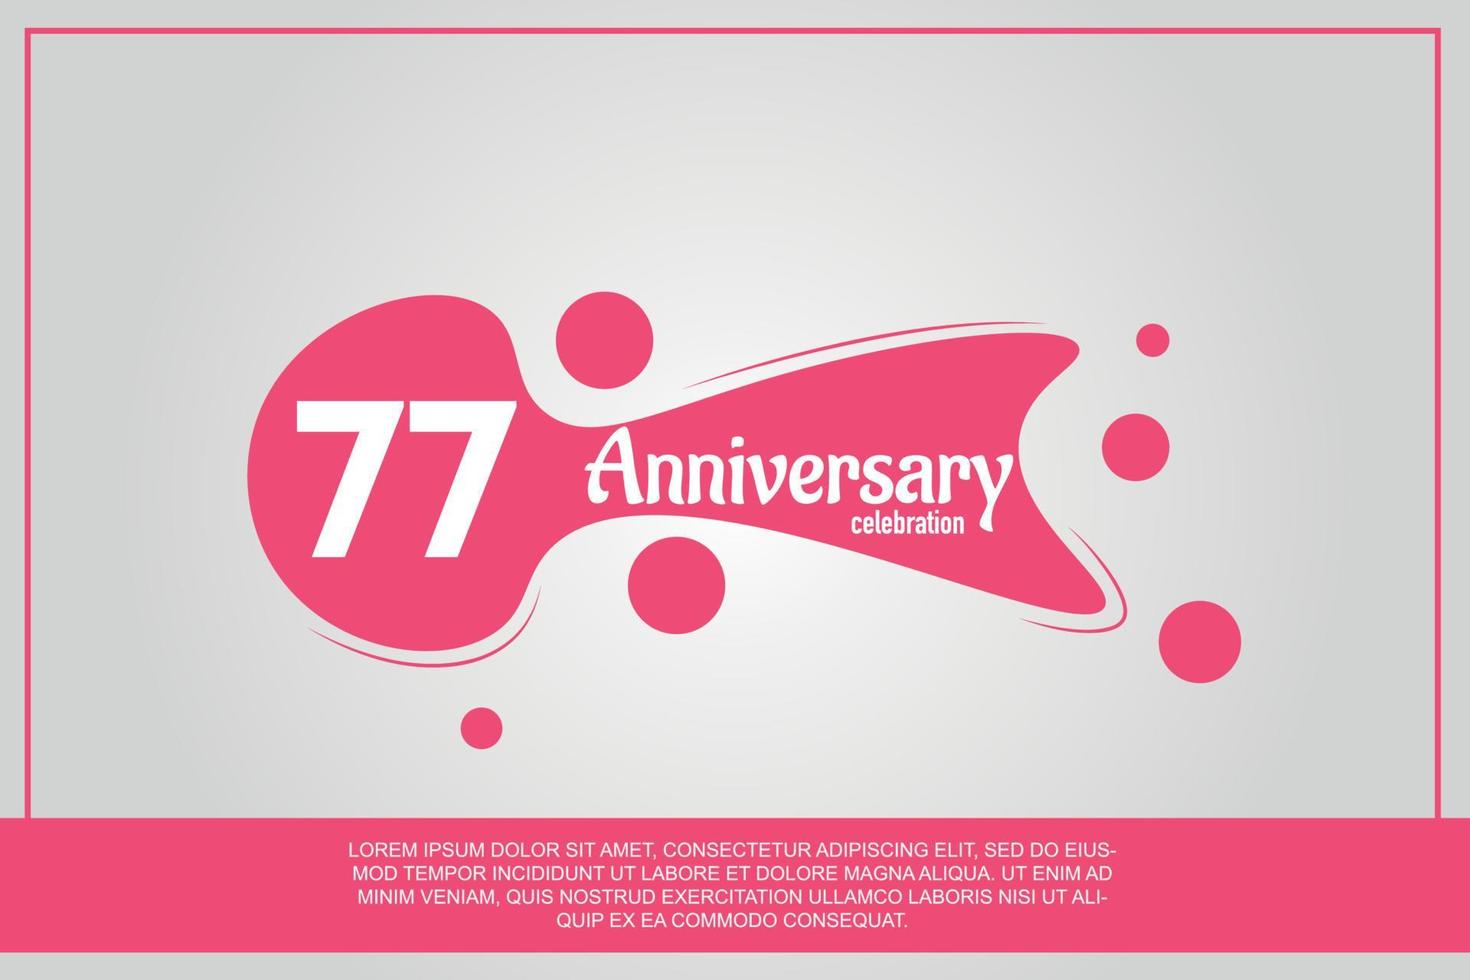 77 anno anniversario celebrazione logo con rosa colore design con rosa colore bolle su grigio sfondo vettore astratto illustrazione